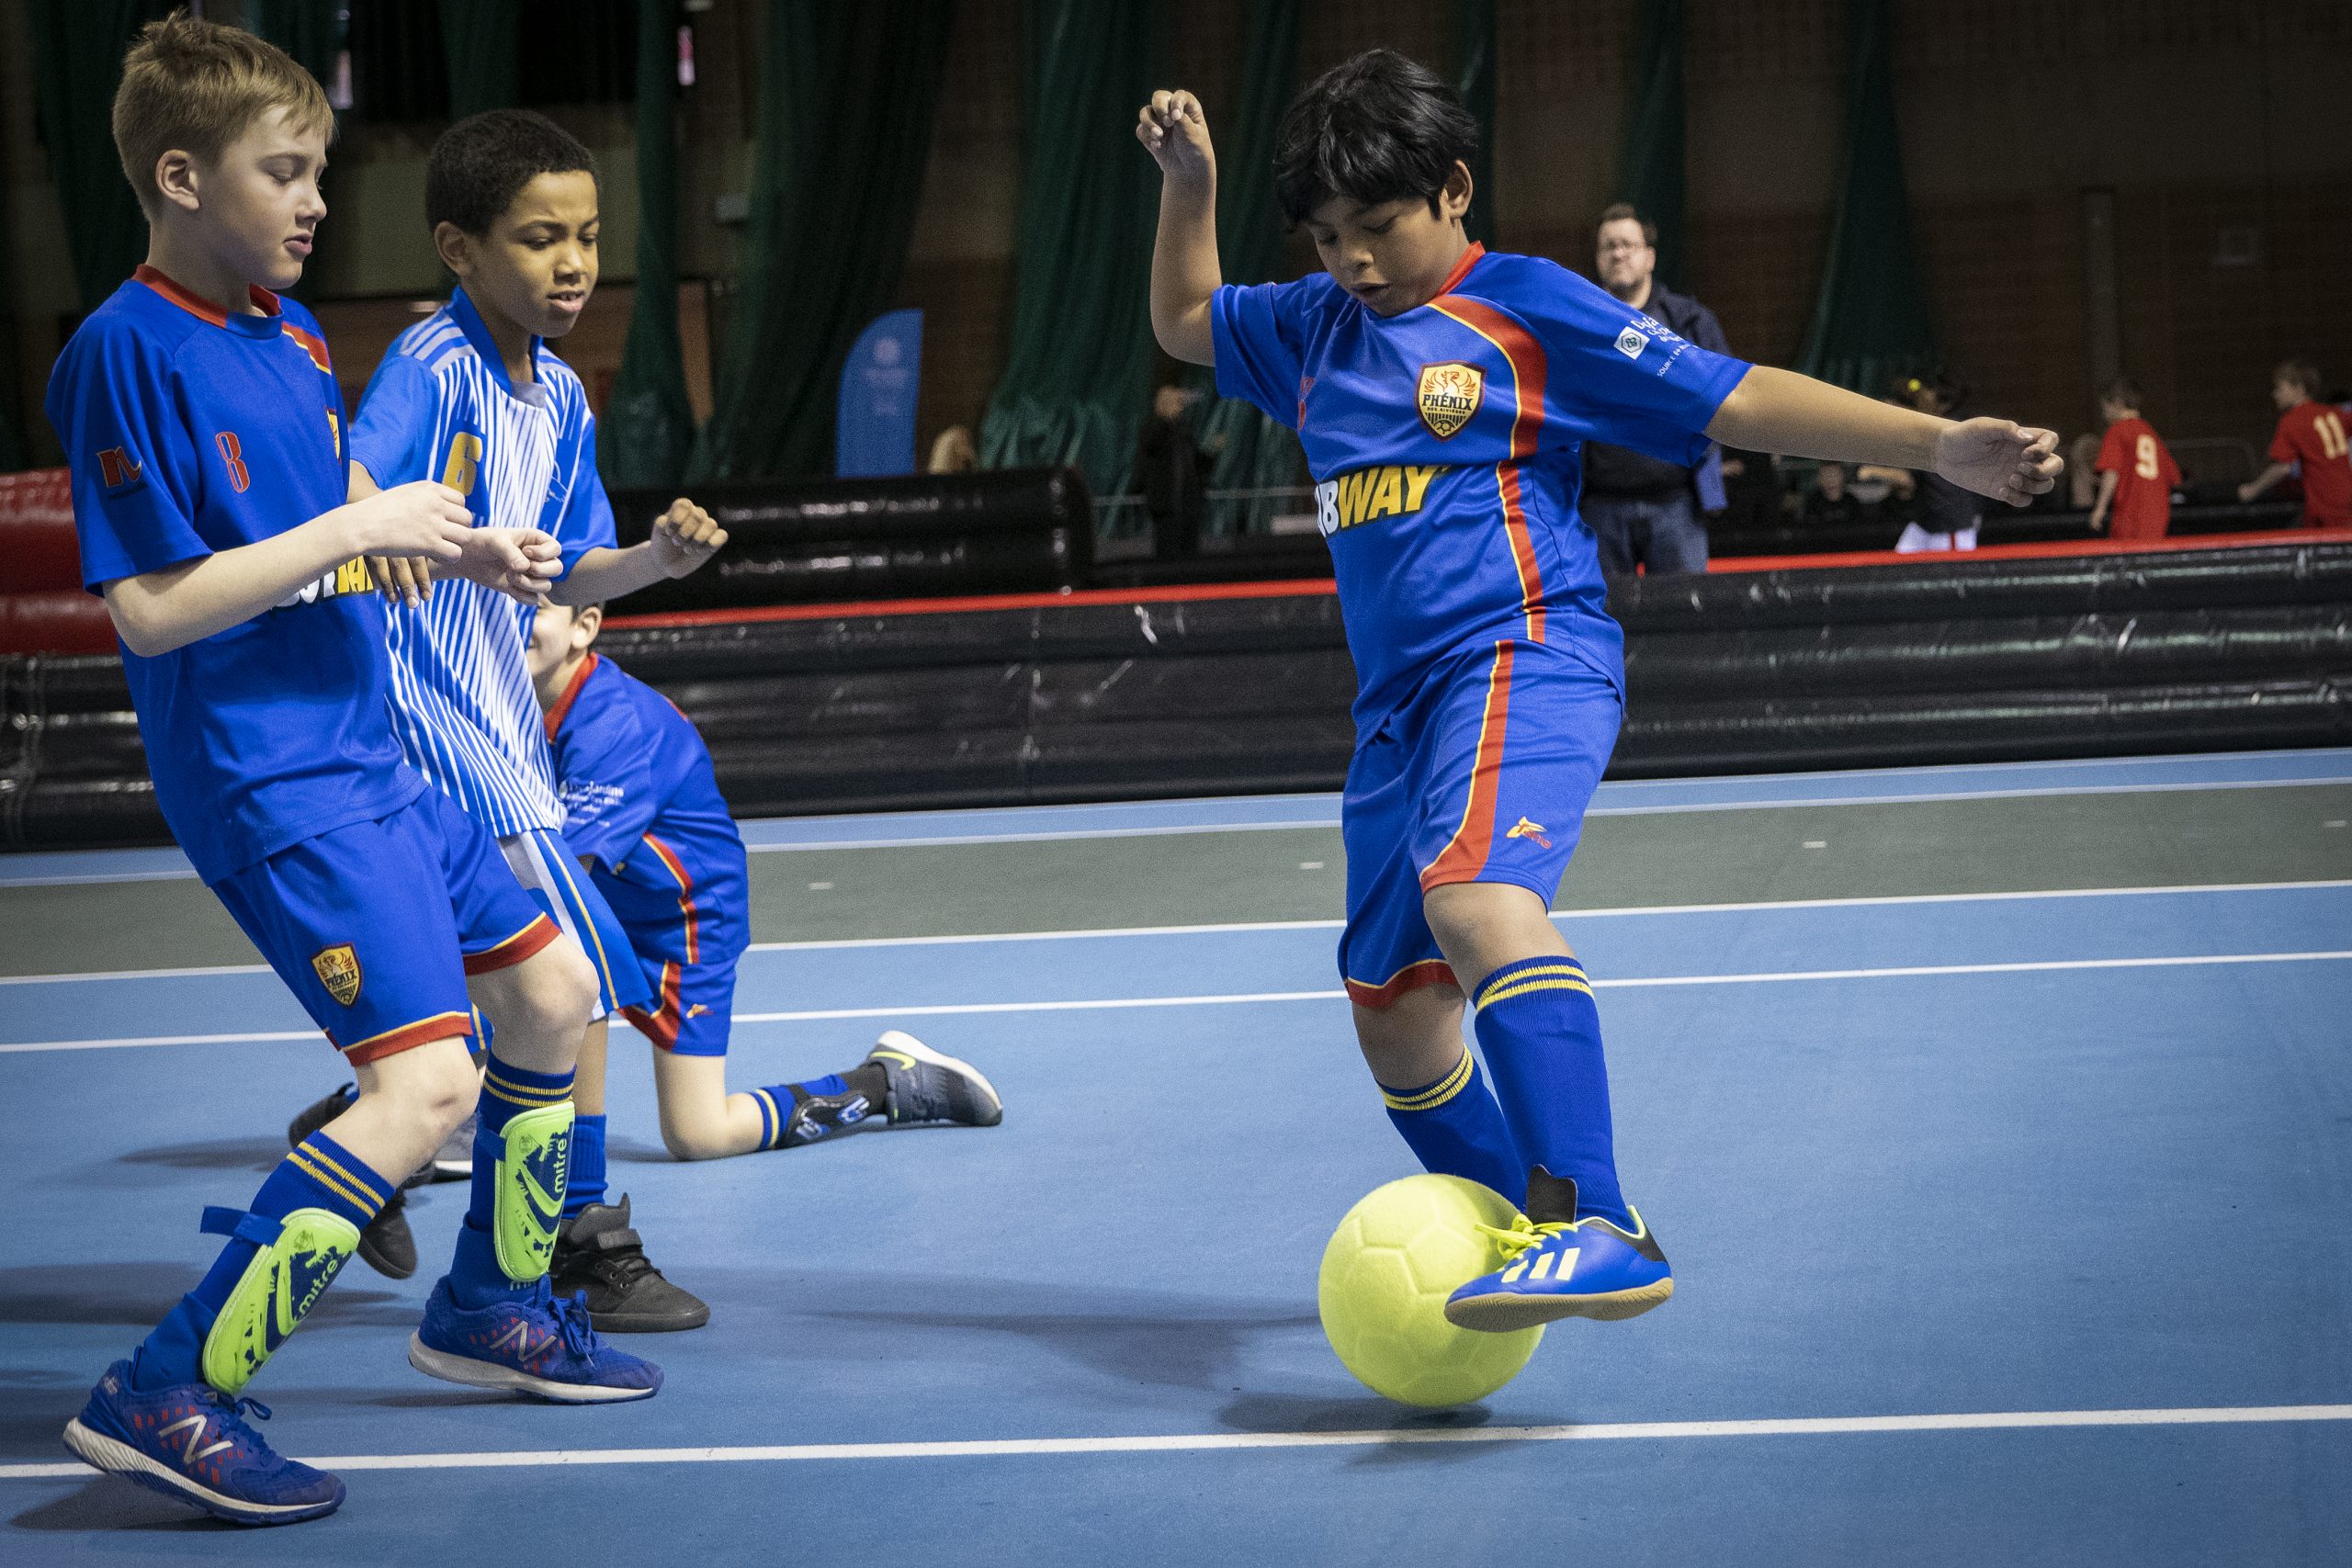 Description de l'image : Au centre, un jeune joueur de soccer dibble avec le ballon devant un coéquipier et un adversaire.